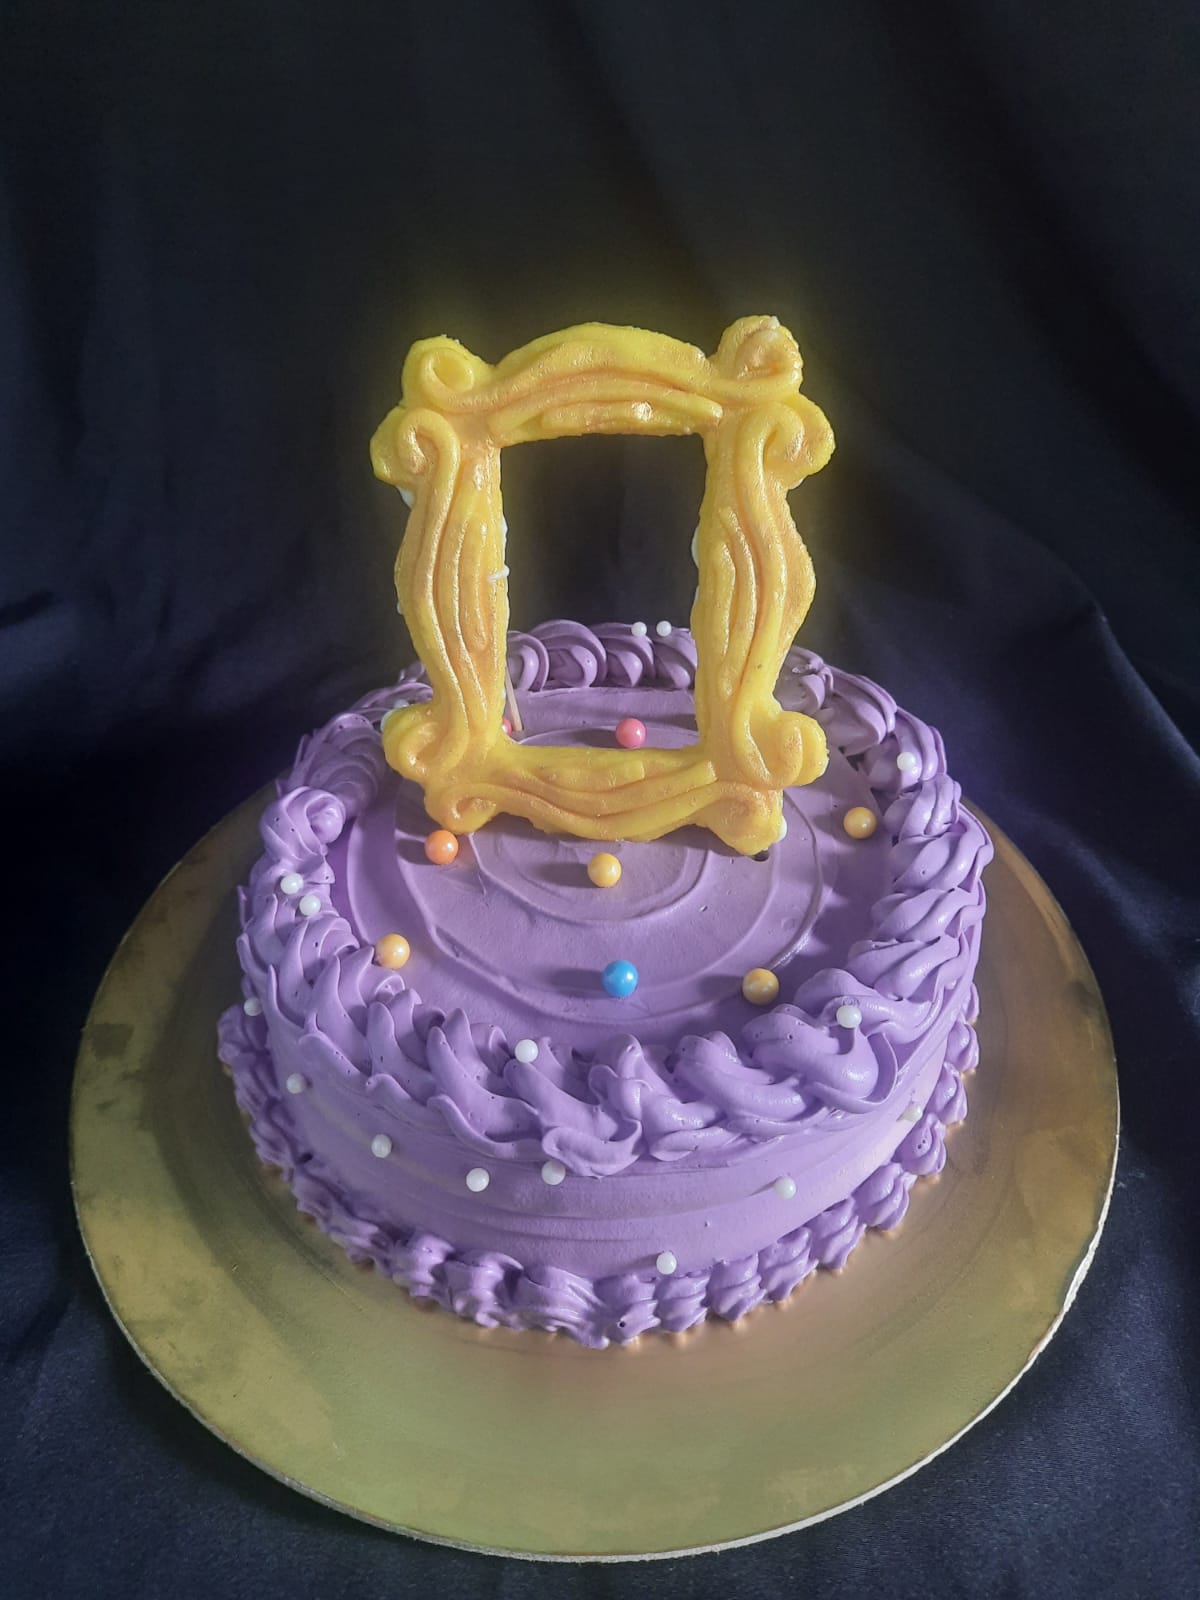 FRIENDS themed cake - Decorated Cake by SheelaK - CakesDecor